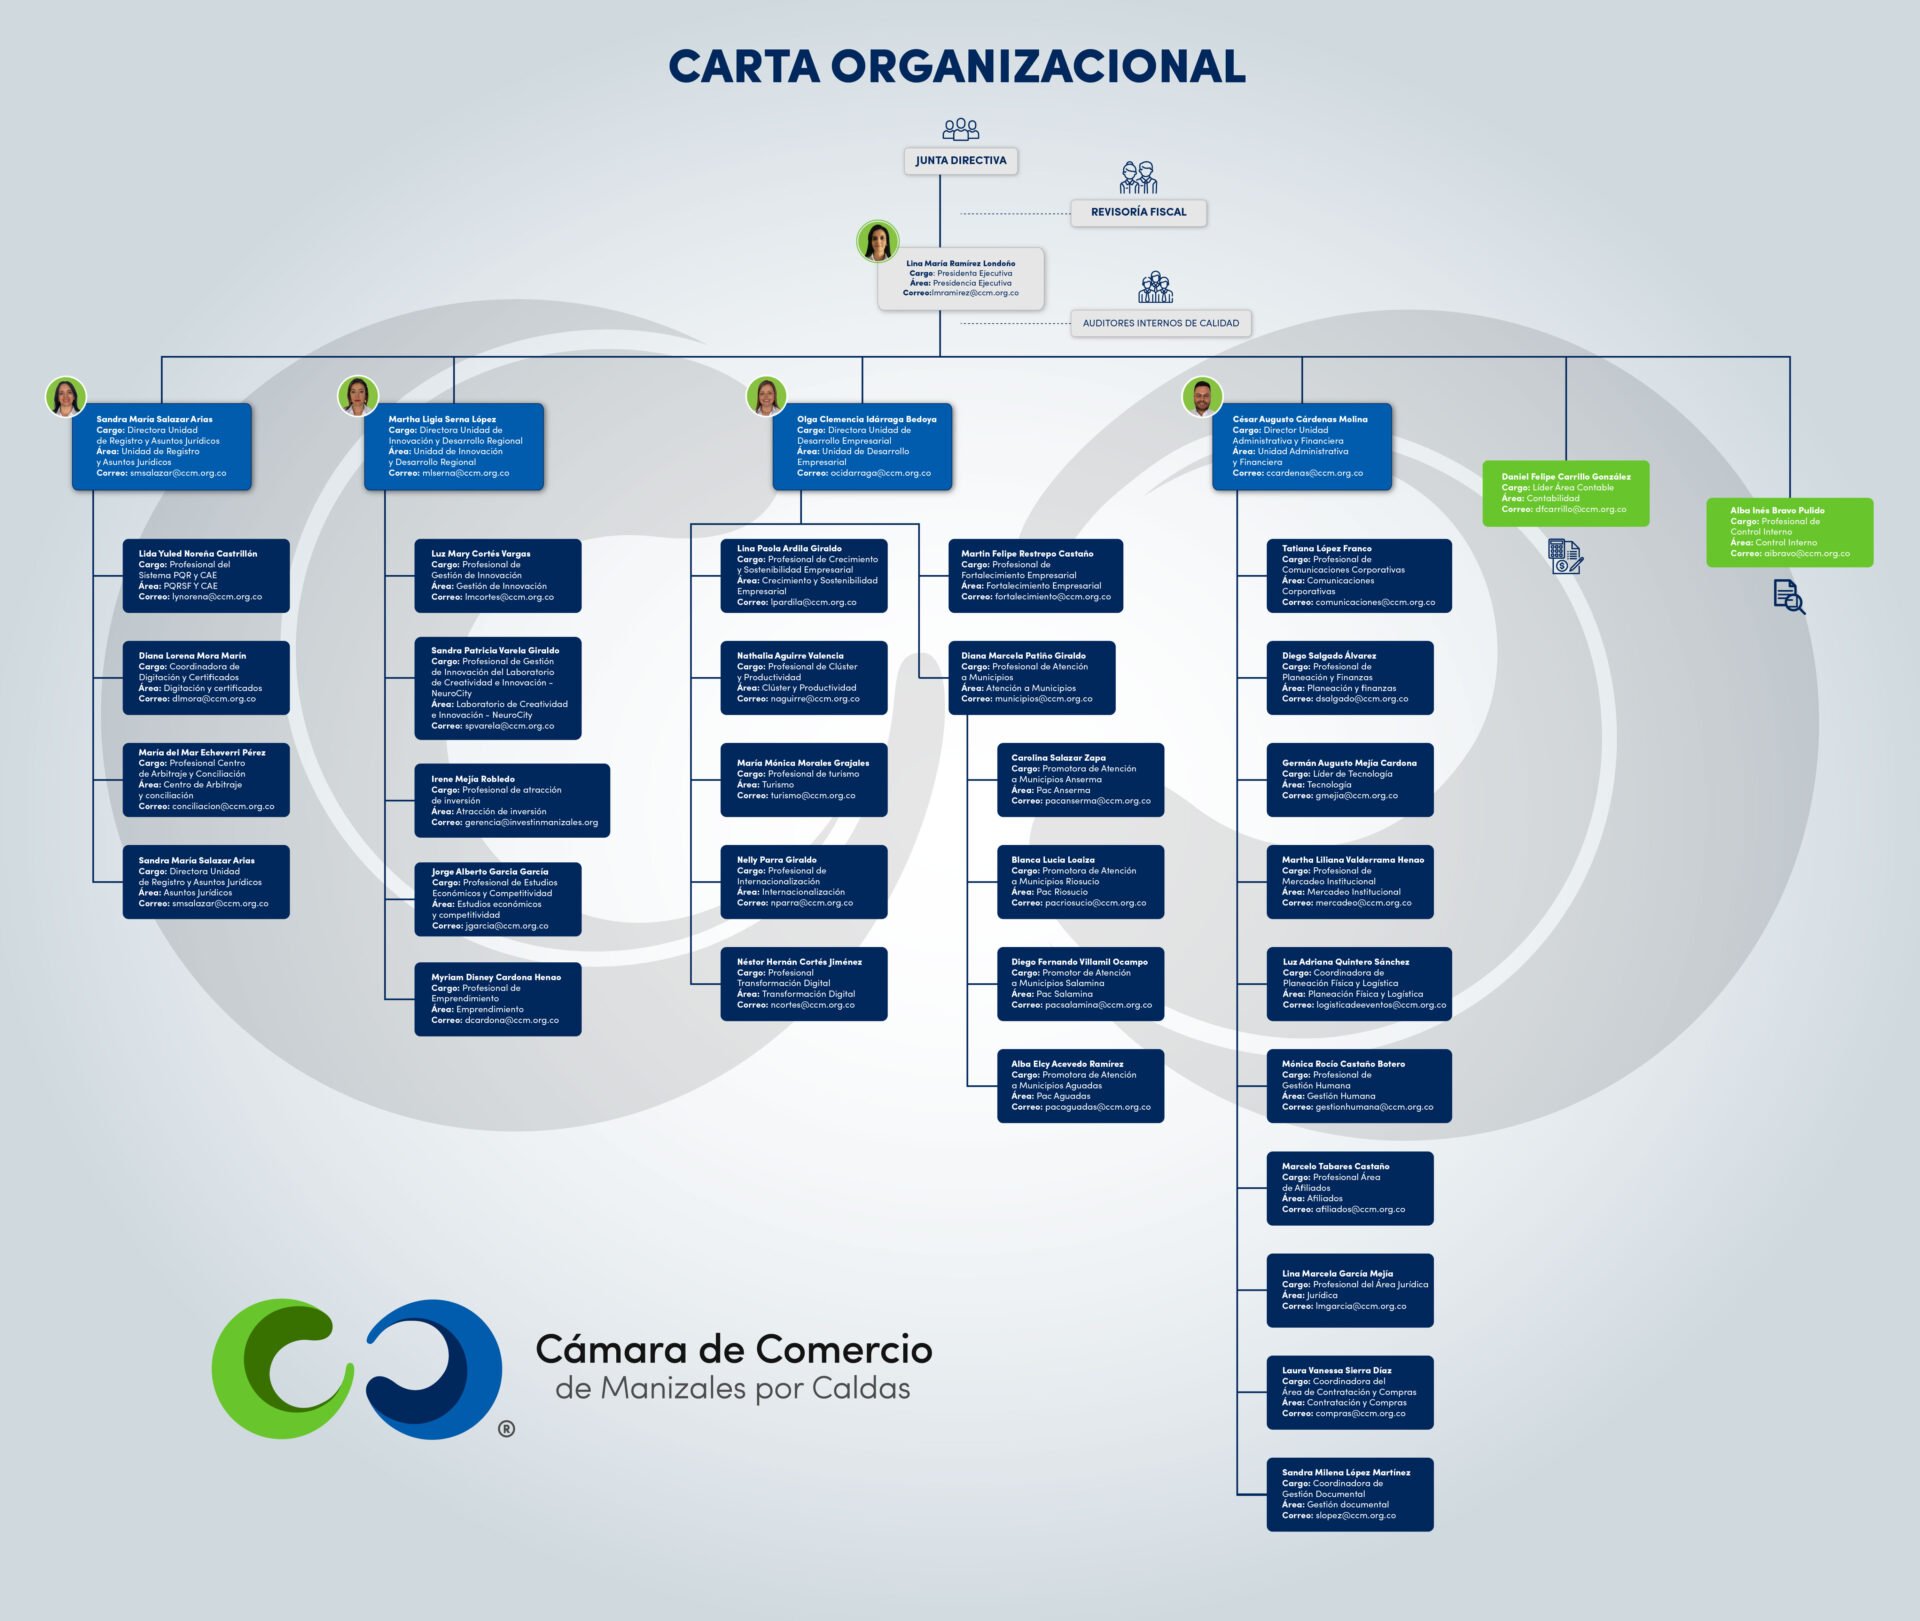 Estructura organizacional CCMPC